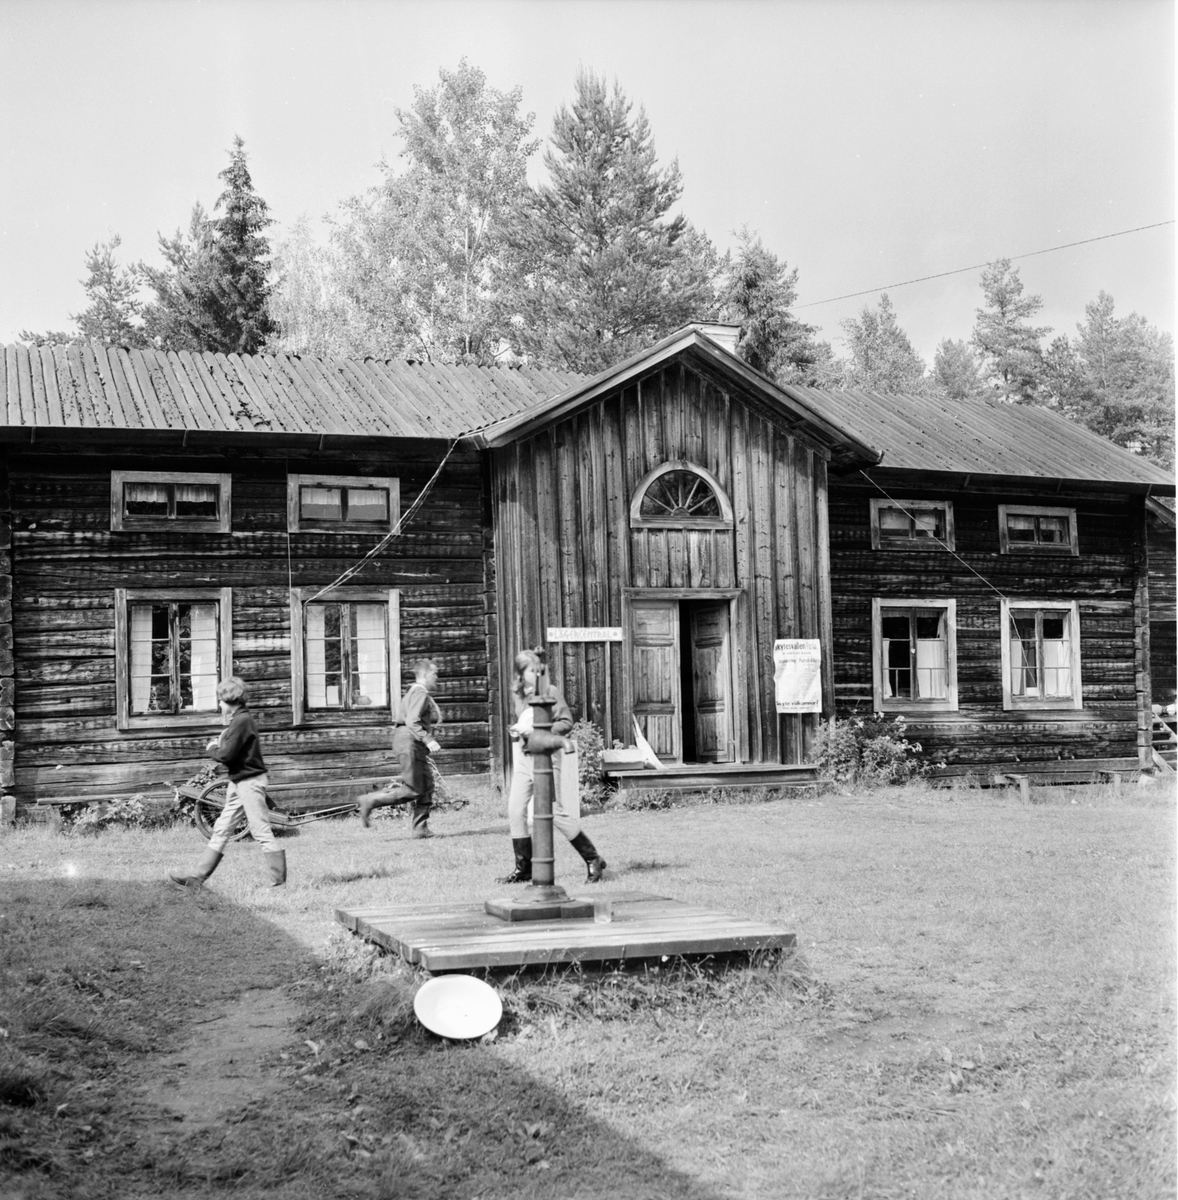 EFS. Rikspatrull läger.
24/6-1964